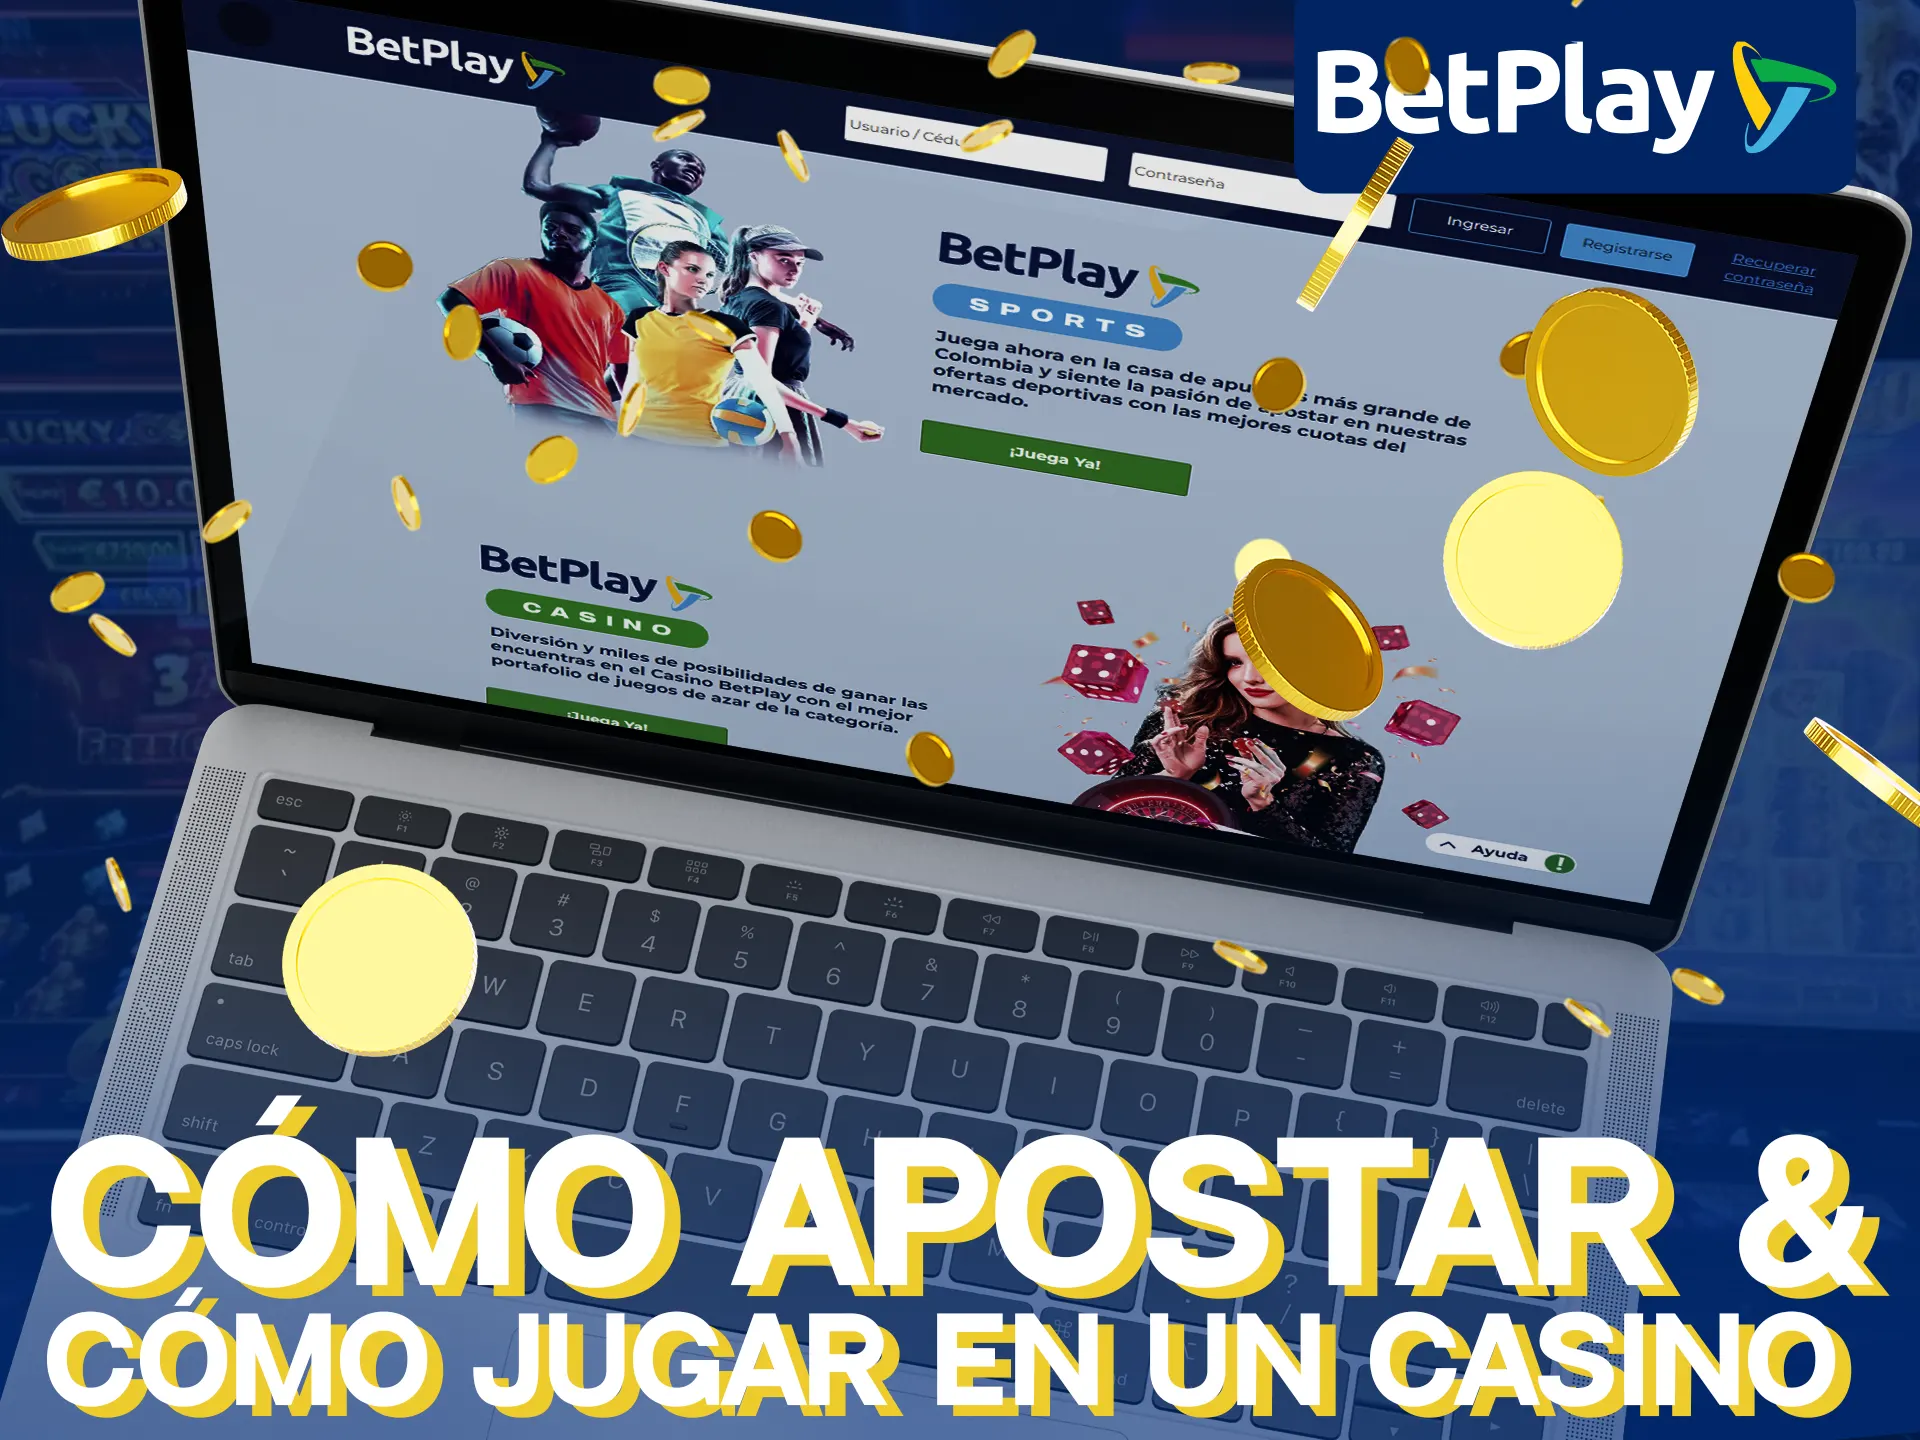 Consulta cómo apostar y cómo jugar en un casino online en Betplay.